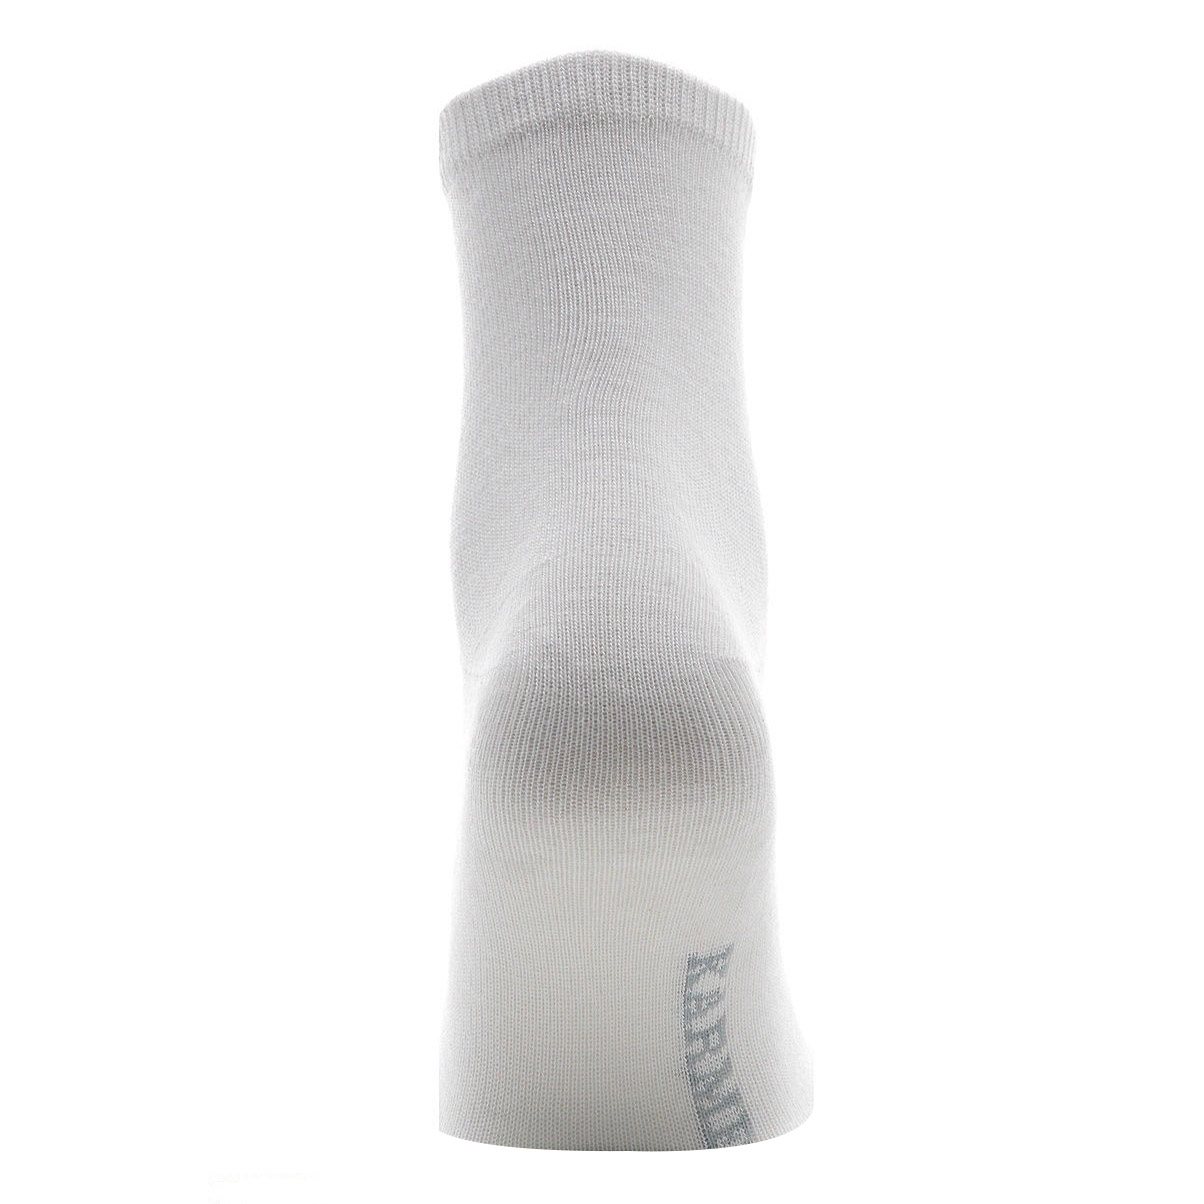 Носки Karmen Calza Lady bianco S 35-37, цвет белый, размер 35-37 - фото 2